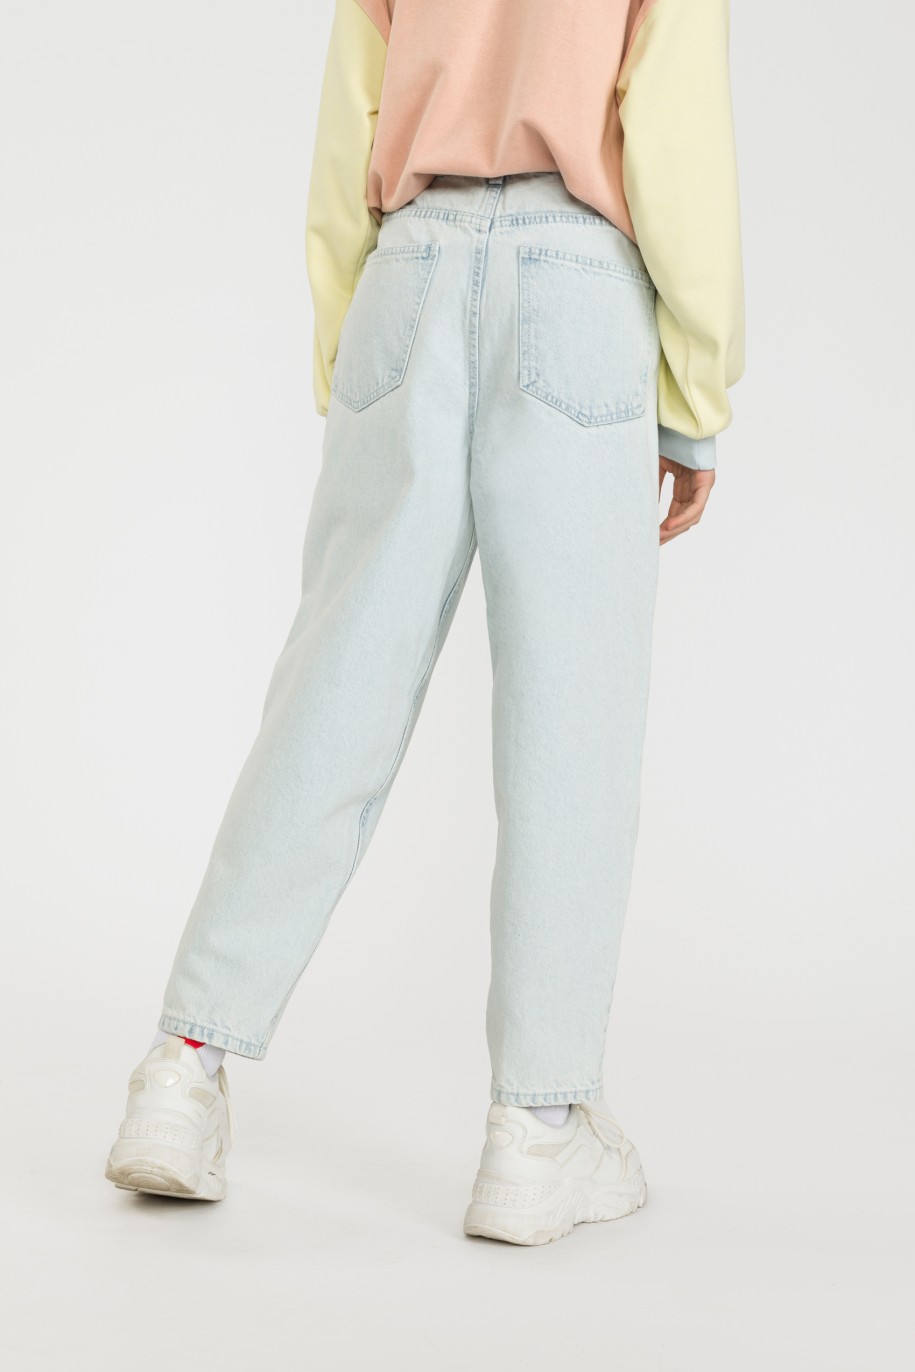 Jeansowe spodnie dla dziewczyny typu slouchy - 32654